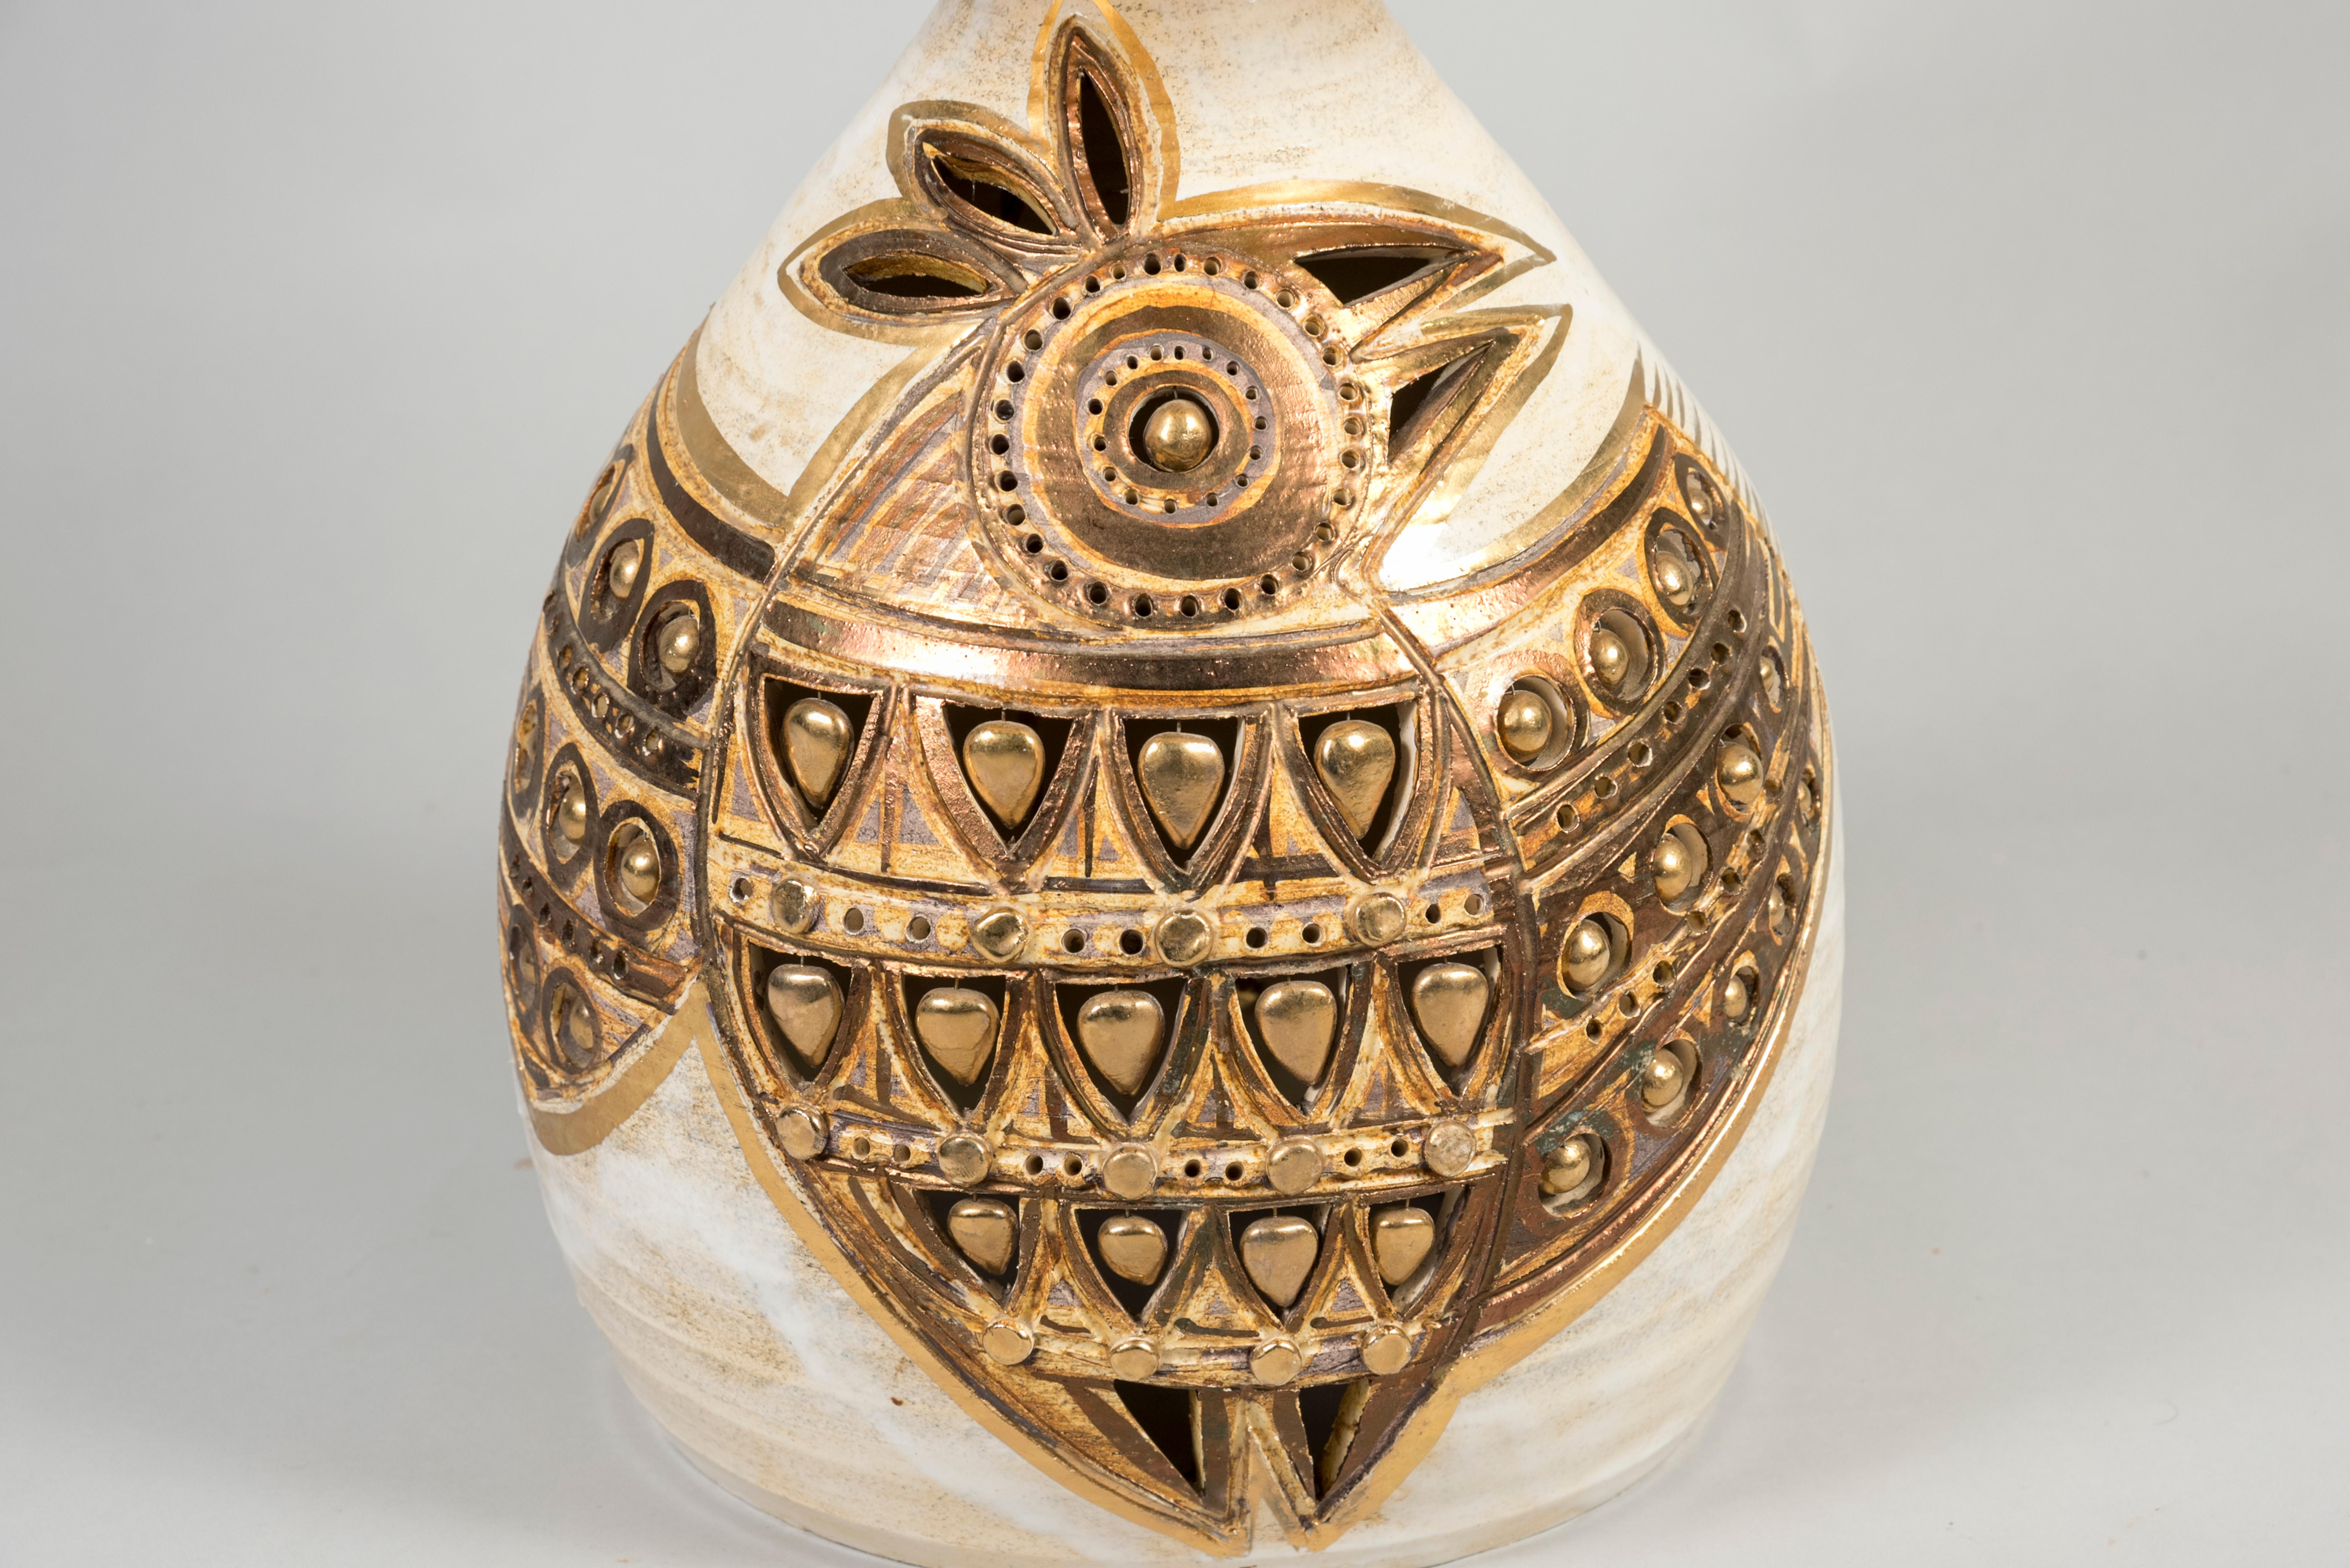 Rare lampe à aigle en céramique de Georges Pelletier
Pas d'abat-jour inclus 
Dimensions données sans ombre
Nouveau câblage 
Vallauris France.